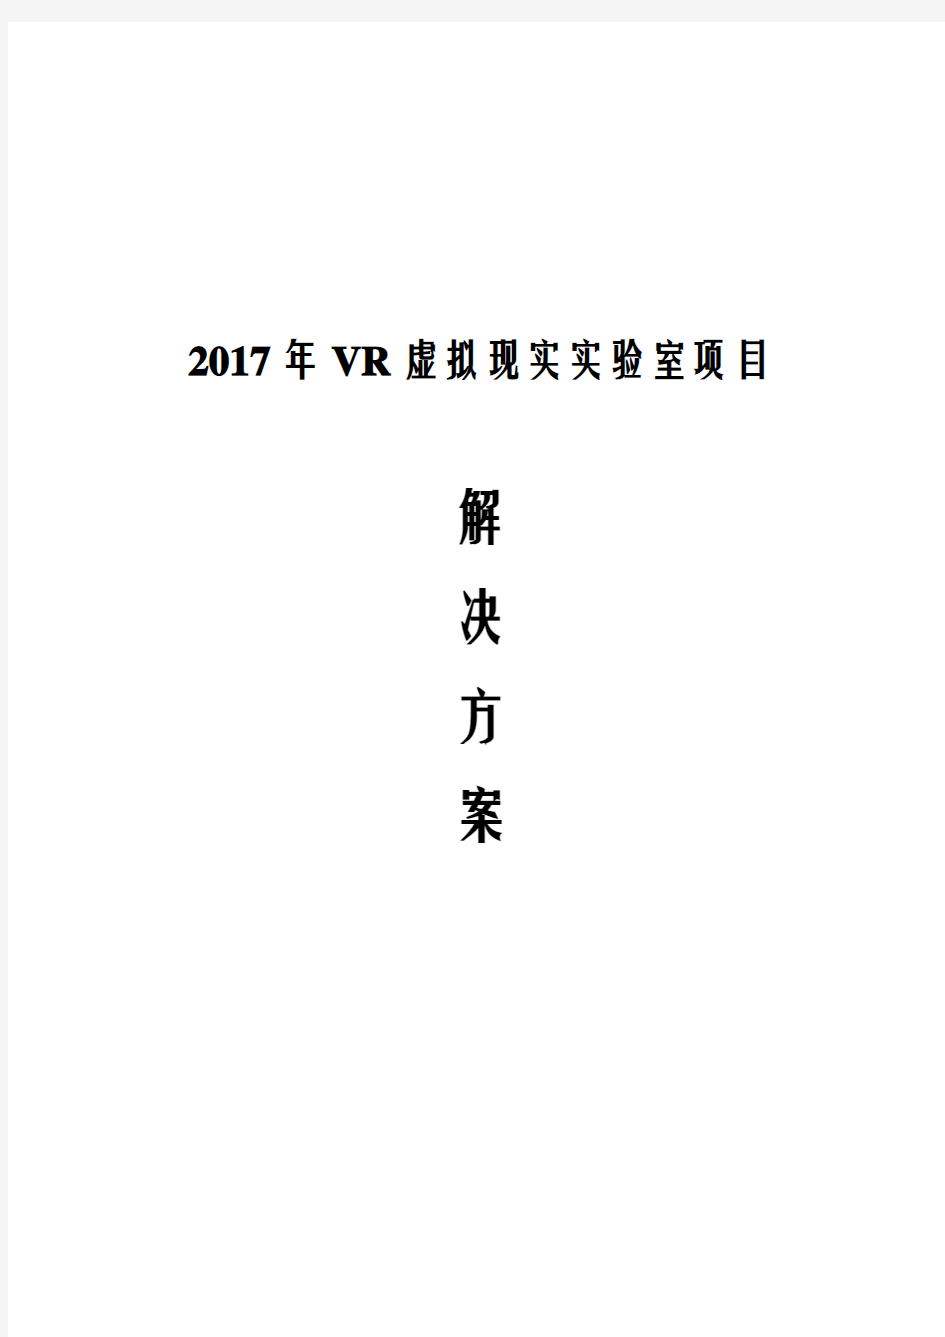 2017年VR虚拟现实实验室项目解决方案